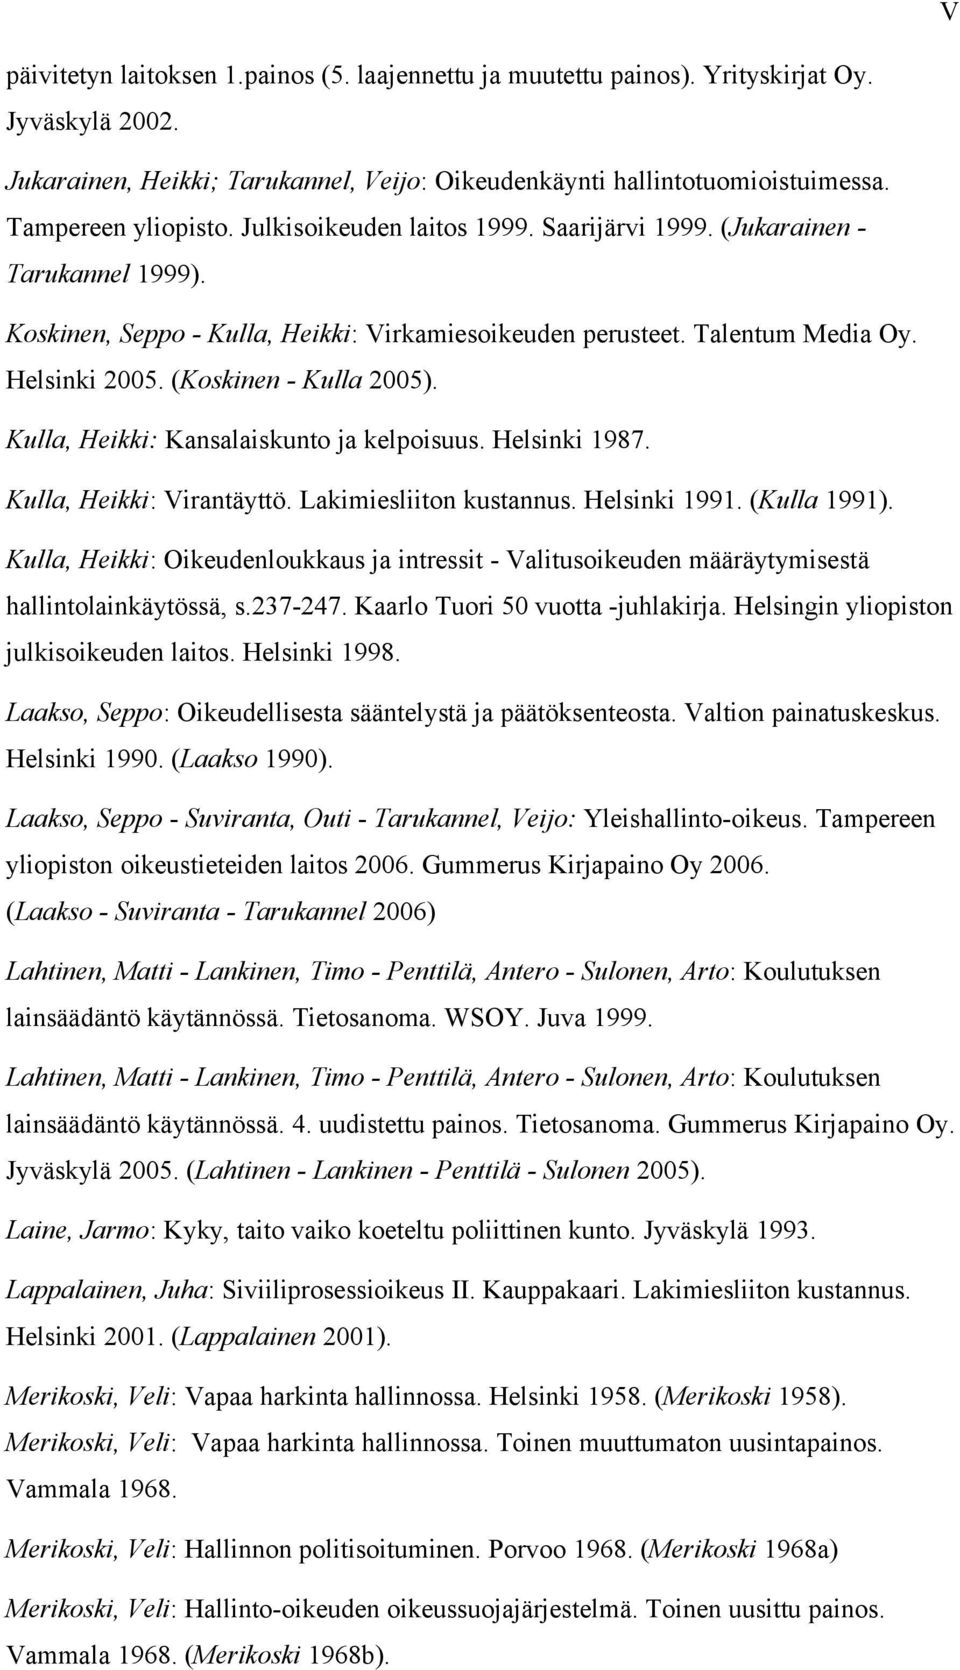 (Koskinen - Kulla 2005). Kulla, Heikki: Kansalaiskunto ja kelpoisuus. Helsinki 1987. Kulla, Heikki: Virantäyttö. Lakimiesliiton kustannus. Helsinki 1991. (Kulla 1991).